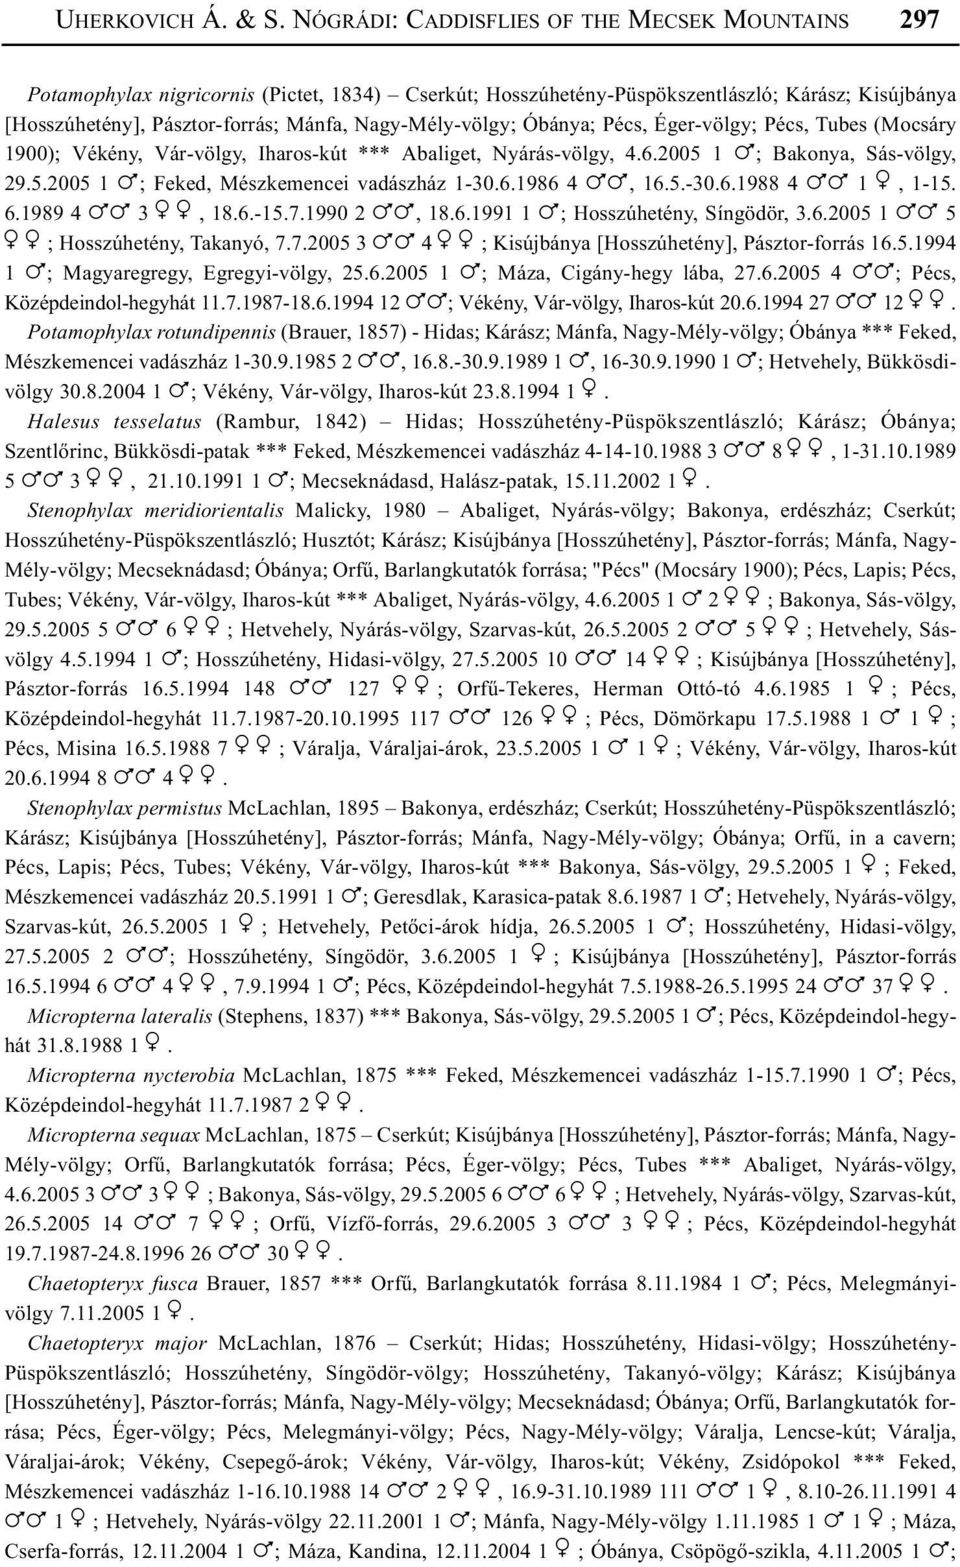 Nagy-Mély-völgy; Óbánya; Pécs, Éger-völgy; Pécs, Tubes (Mocsáry 1900); Vékény, Vár-völgy, Iharos-kút *** Abaliget, Nyárás-völgy, 4.6.2005 1!; Bakonya, Sás-völgy, 29.5.2005 1!; Feked, Mészkemencei vadászház 1-30.